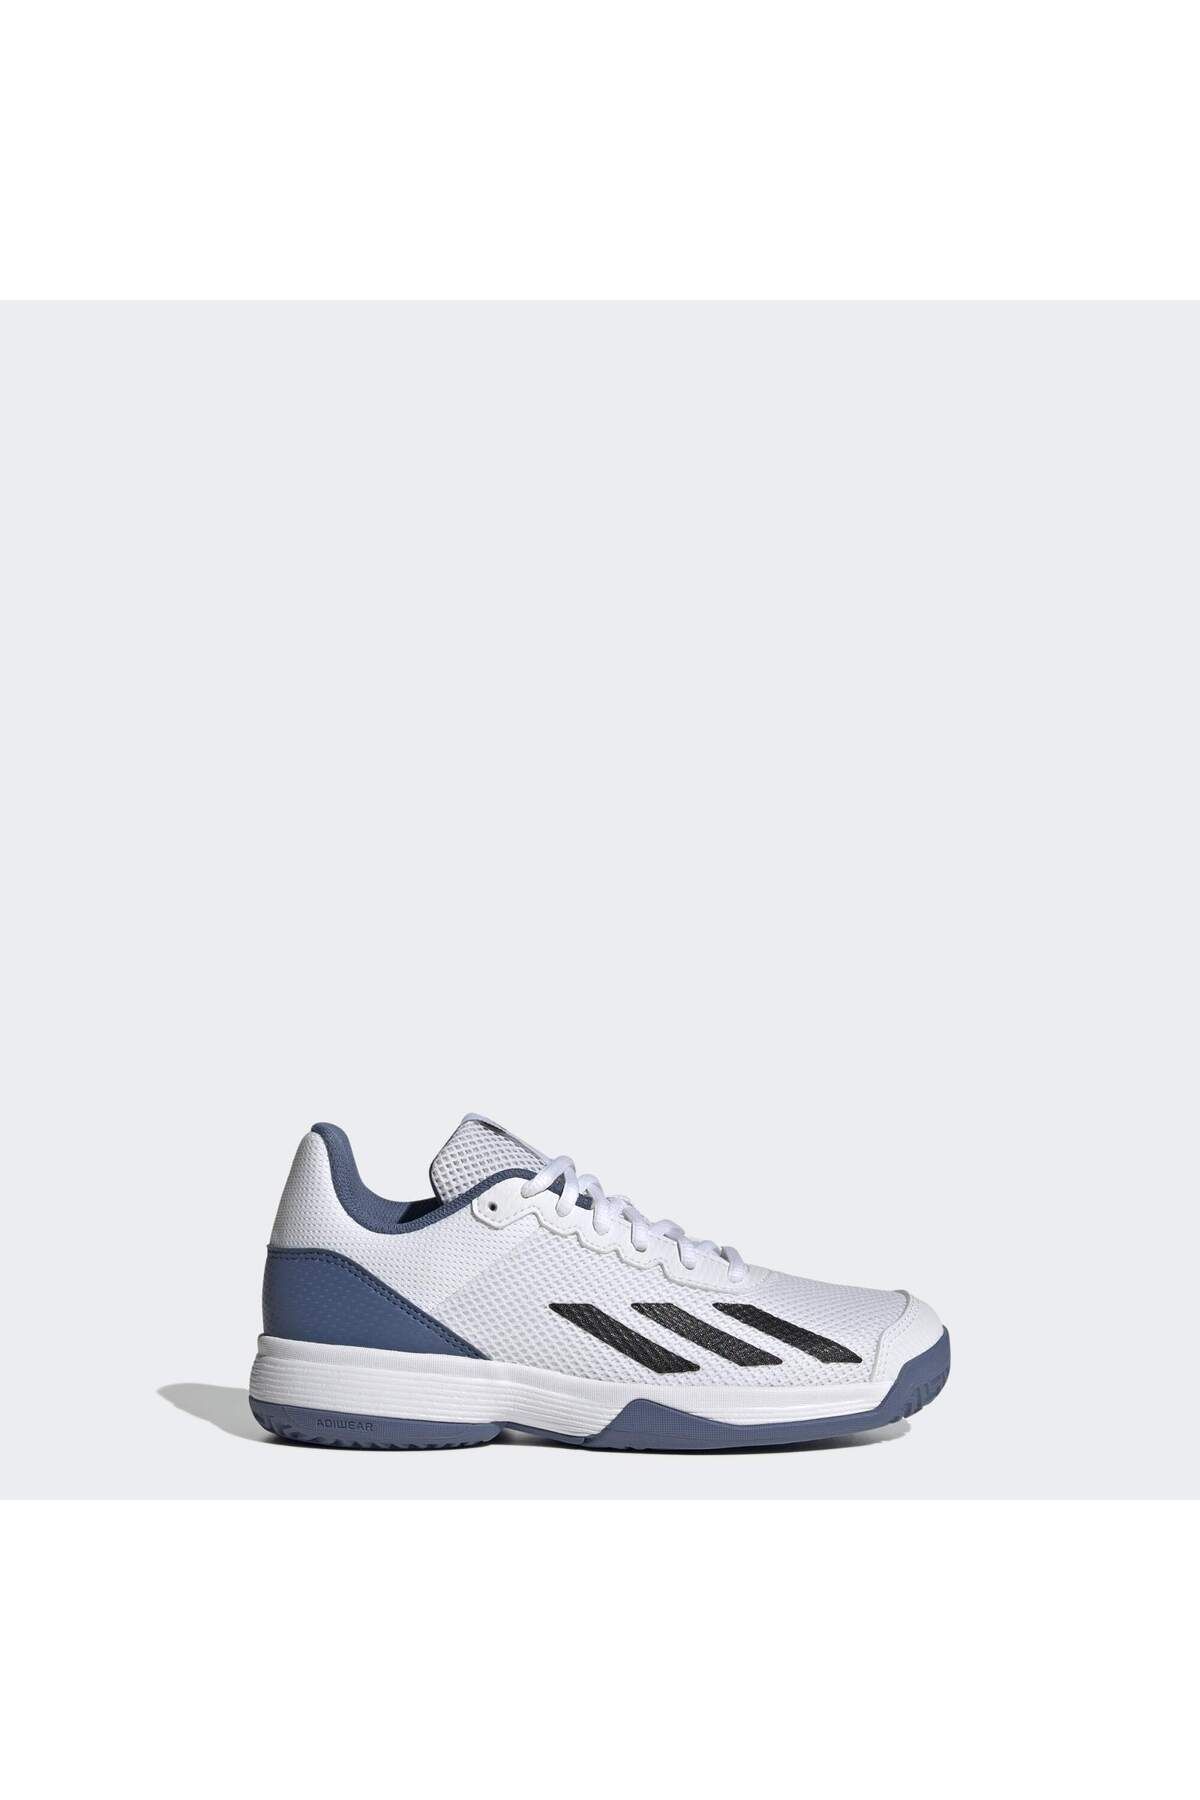 adidas Courtflash K Çocuk Tenis Ayakkabısı Ig9536